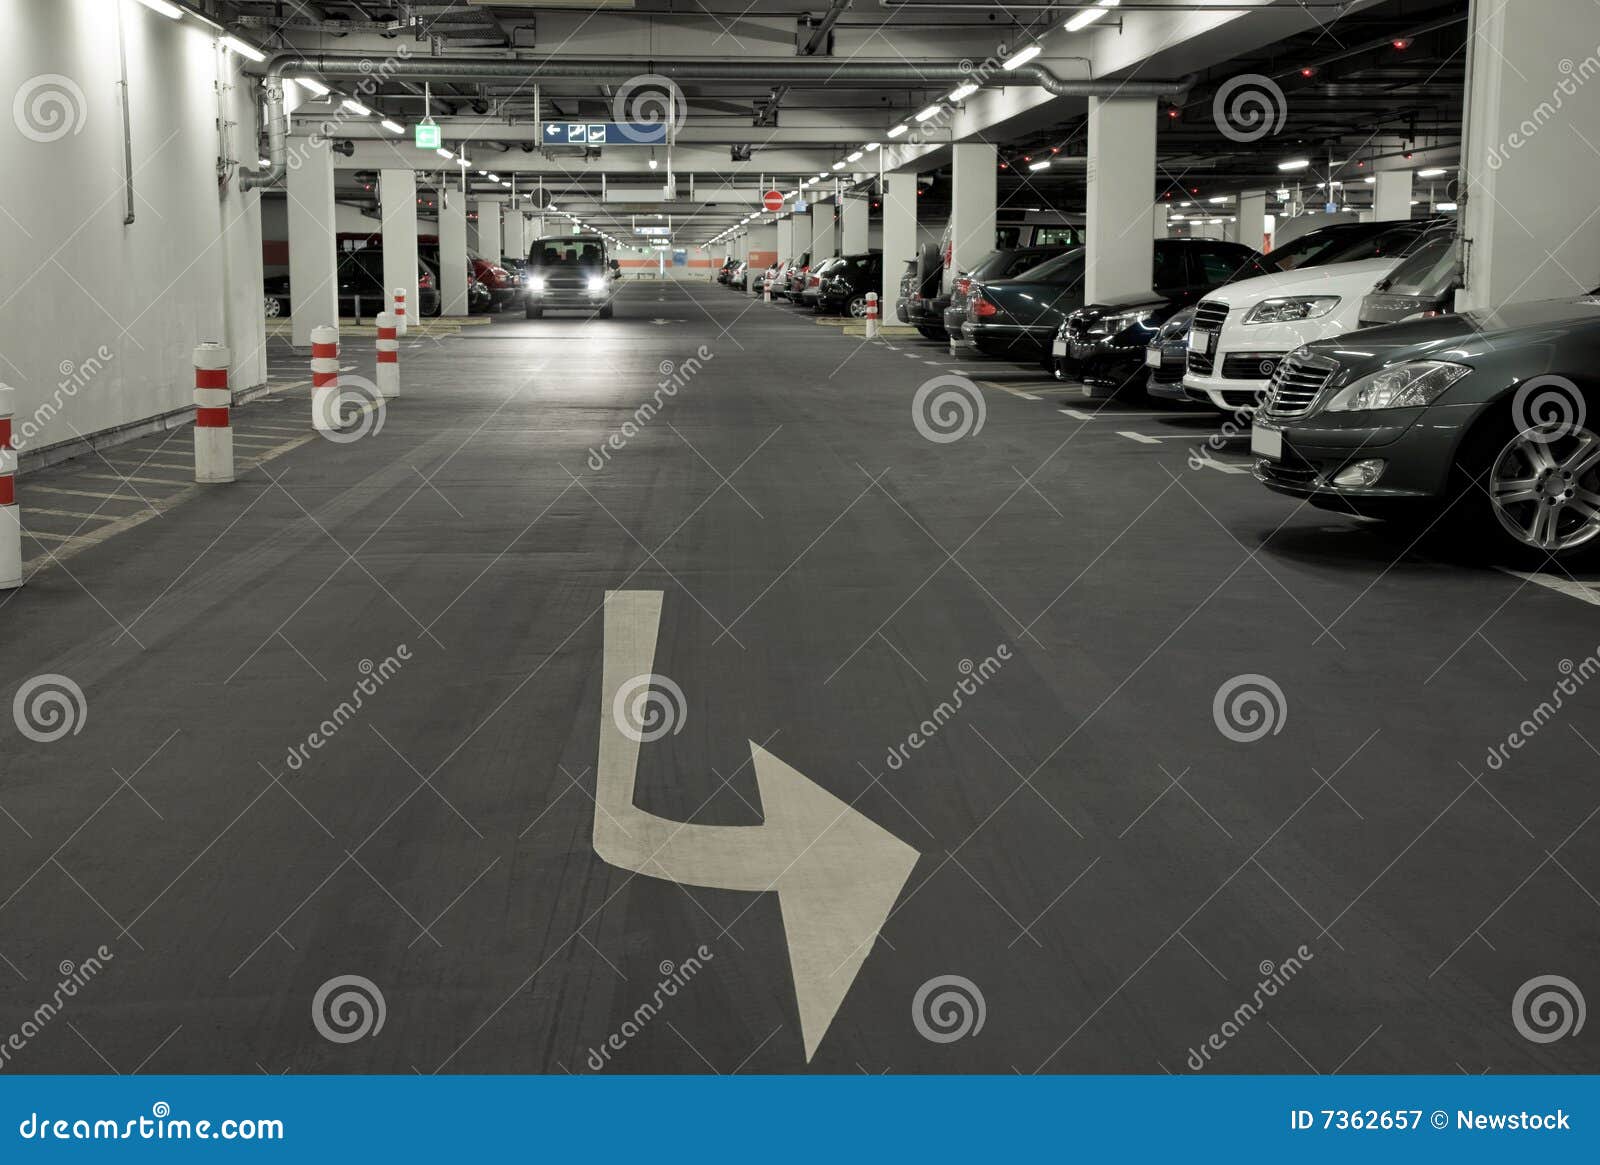 Underground carpark stock image. Image of architecture - 7362657